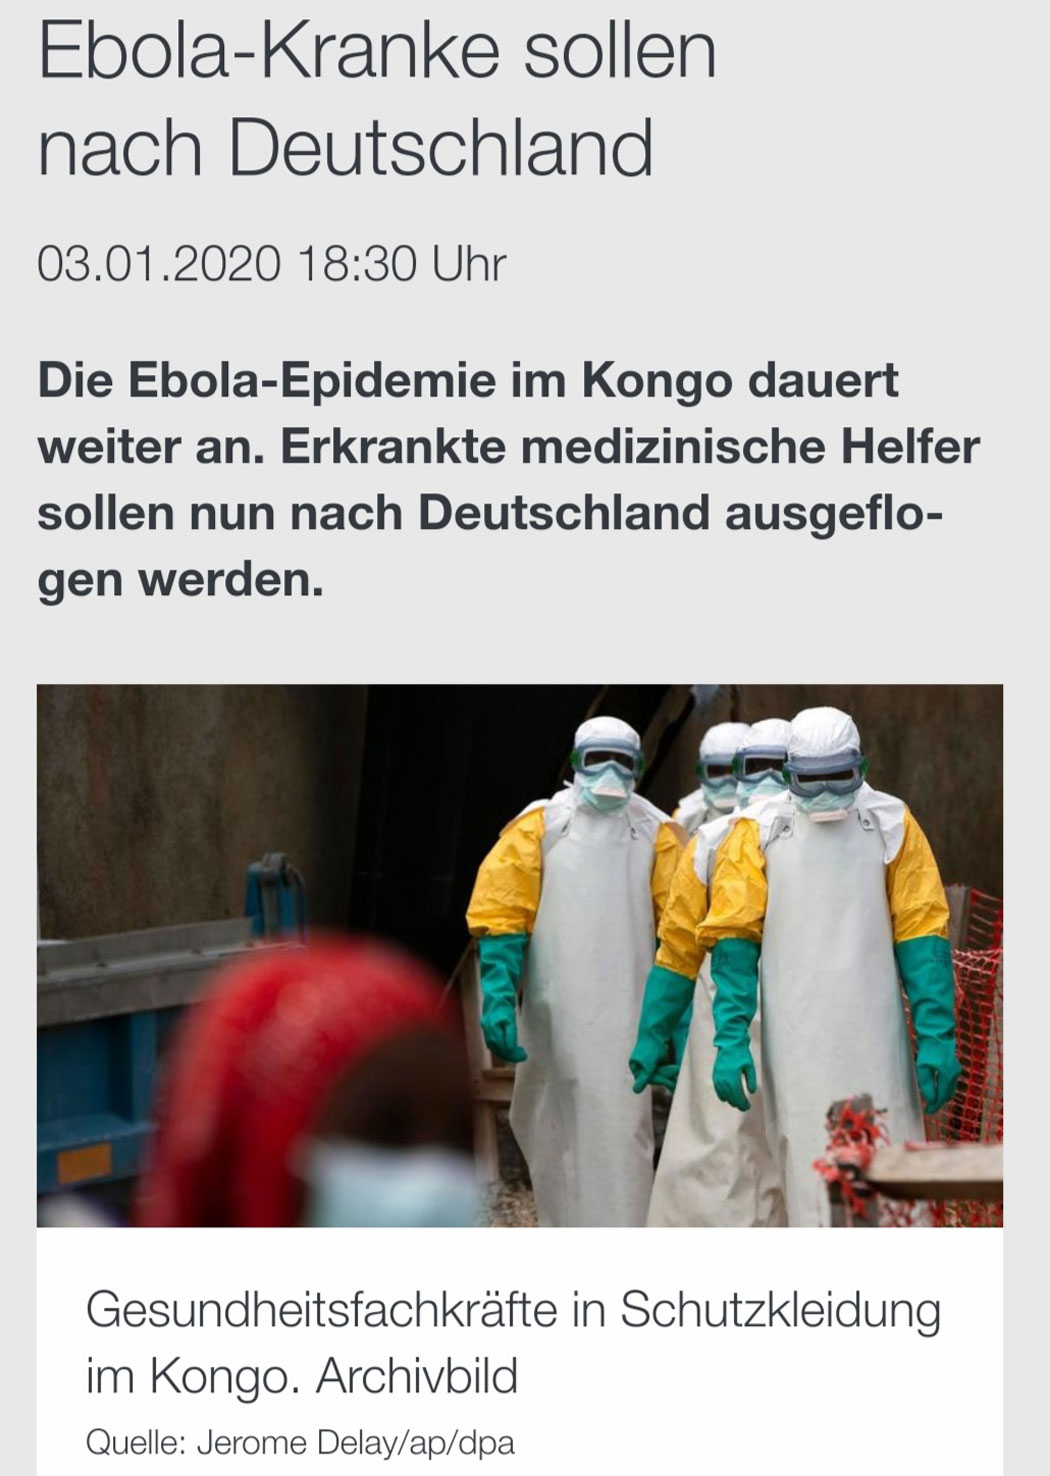 Ebola-Kranke sollen nach Deutschland